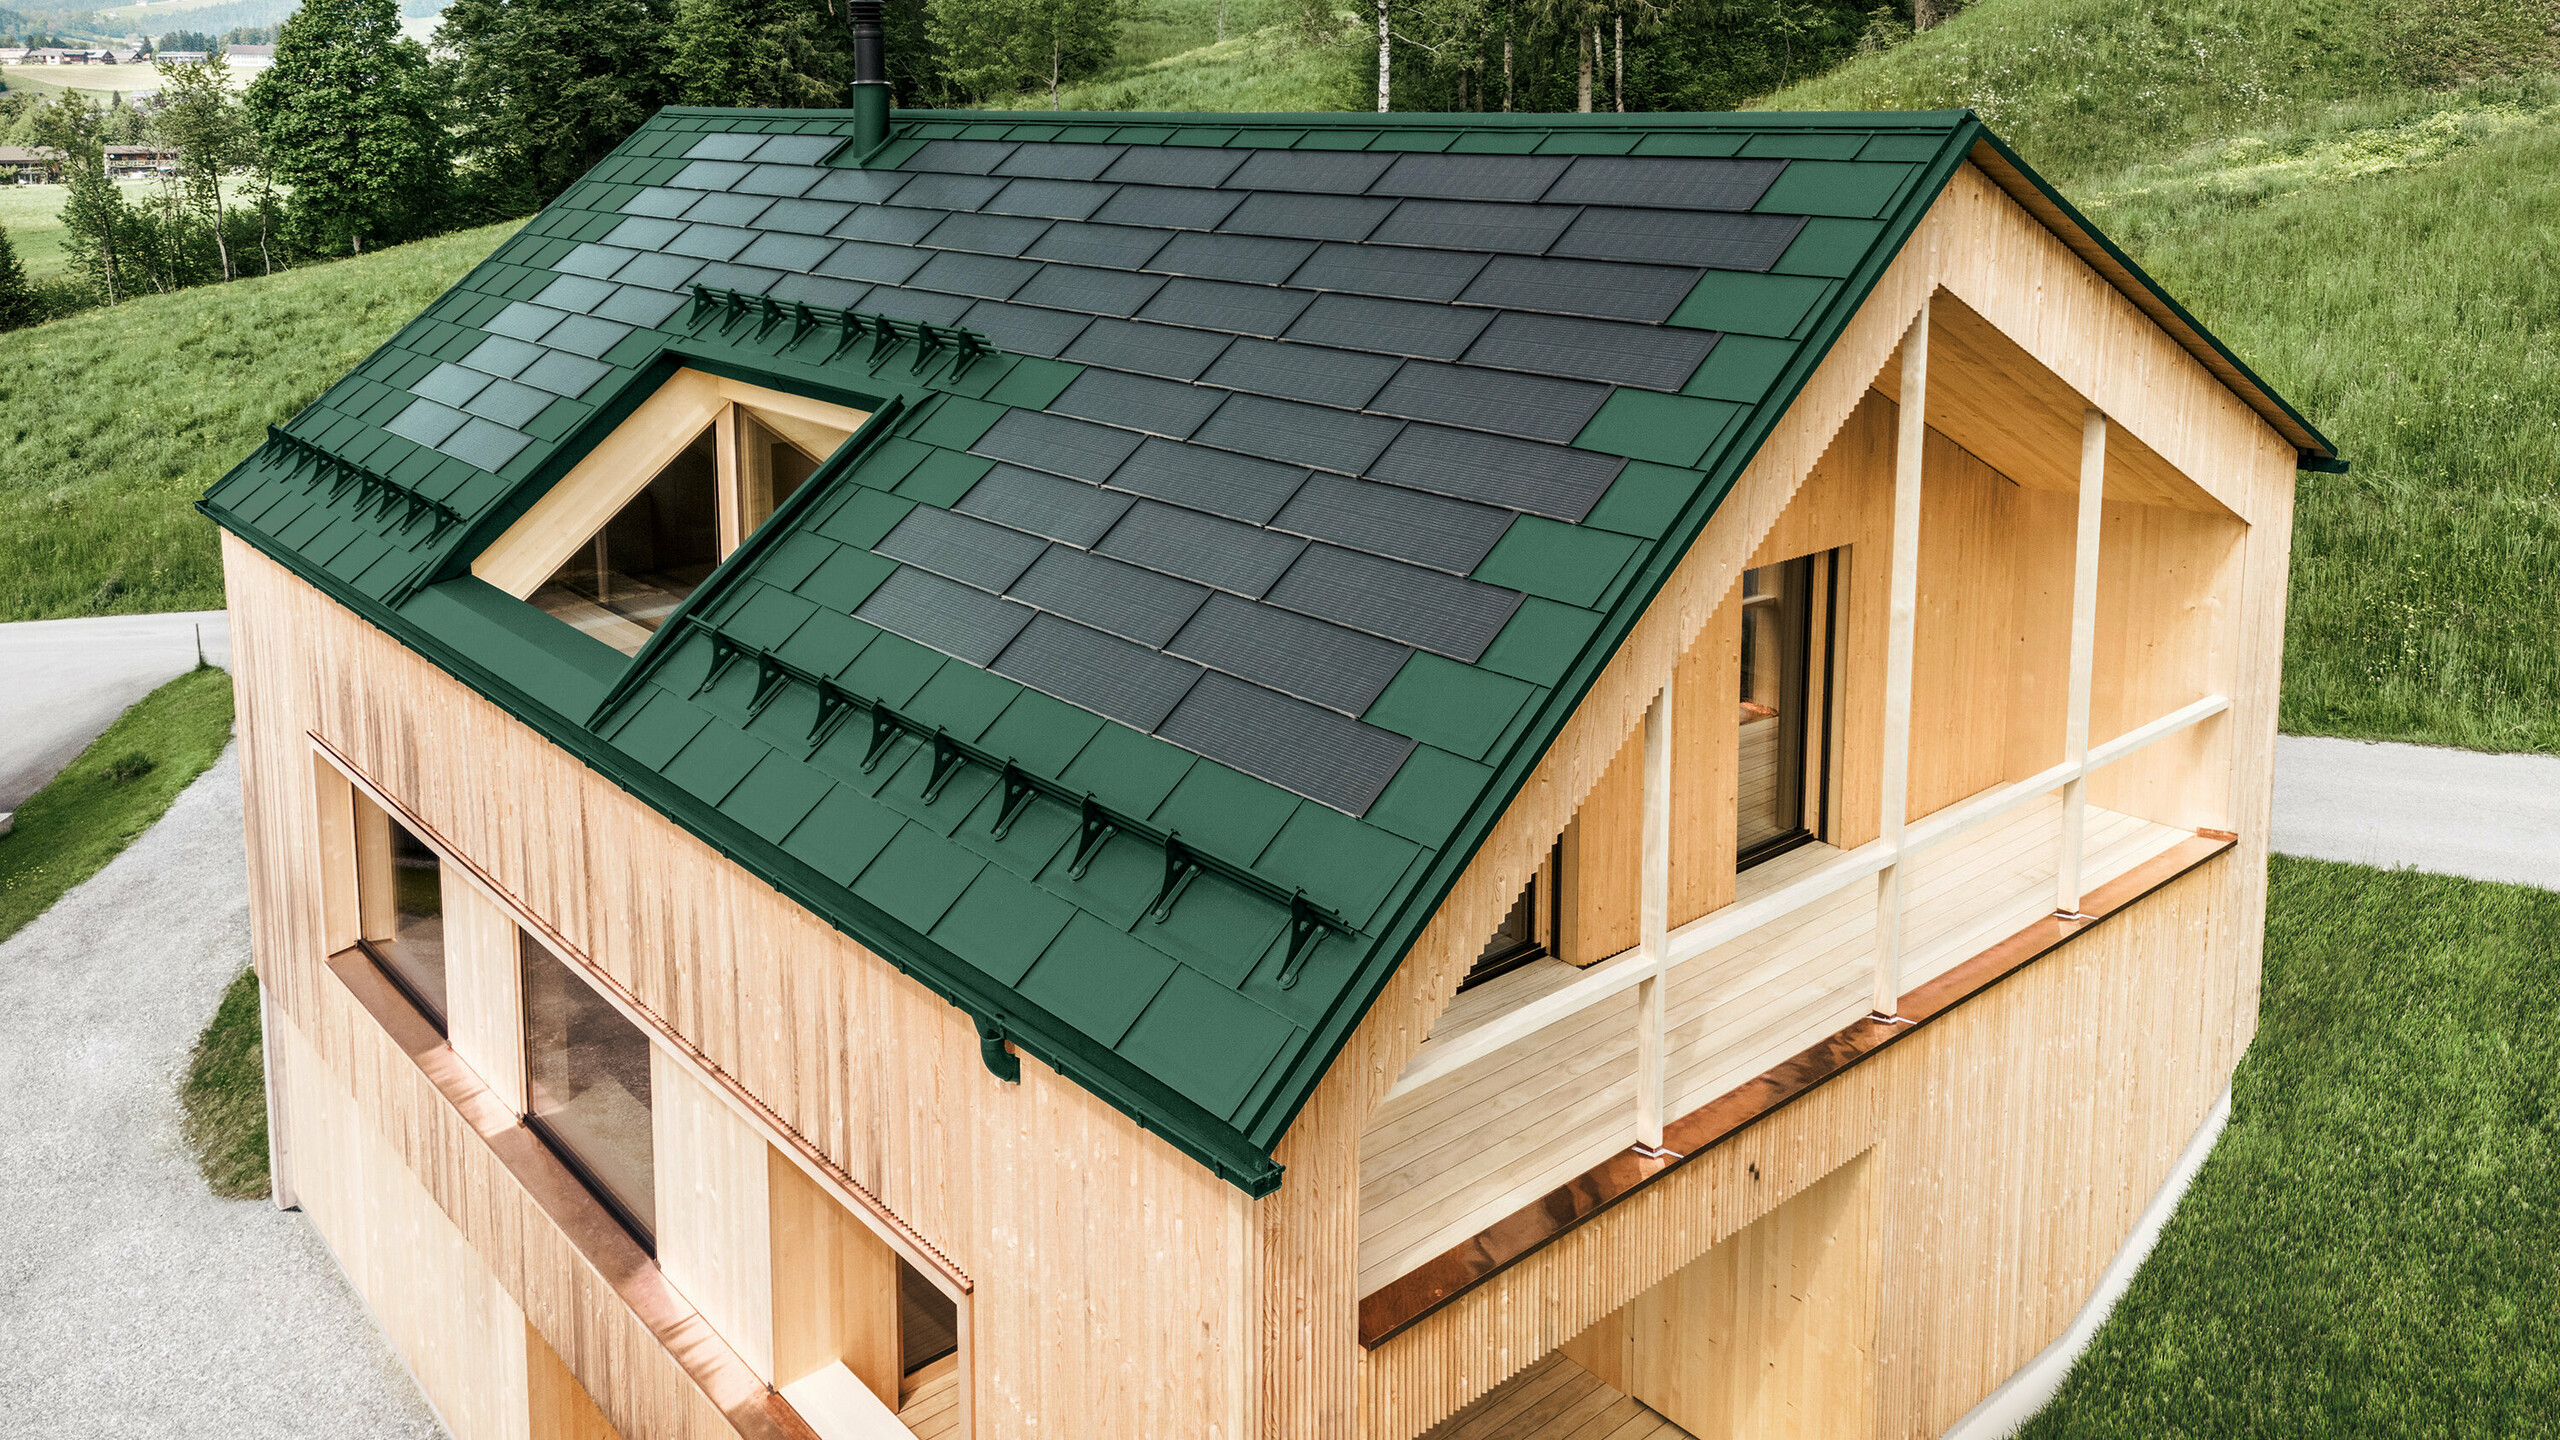 Einfamilienhaus im österreichischen Ort Egg mit der PREFA Solardachplatte und der Dachplatte R.16 in Moosgrün, kombiniert mit einer Holzfassade